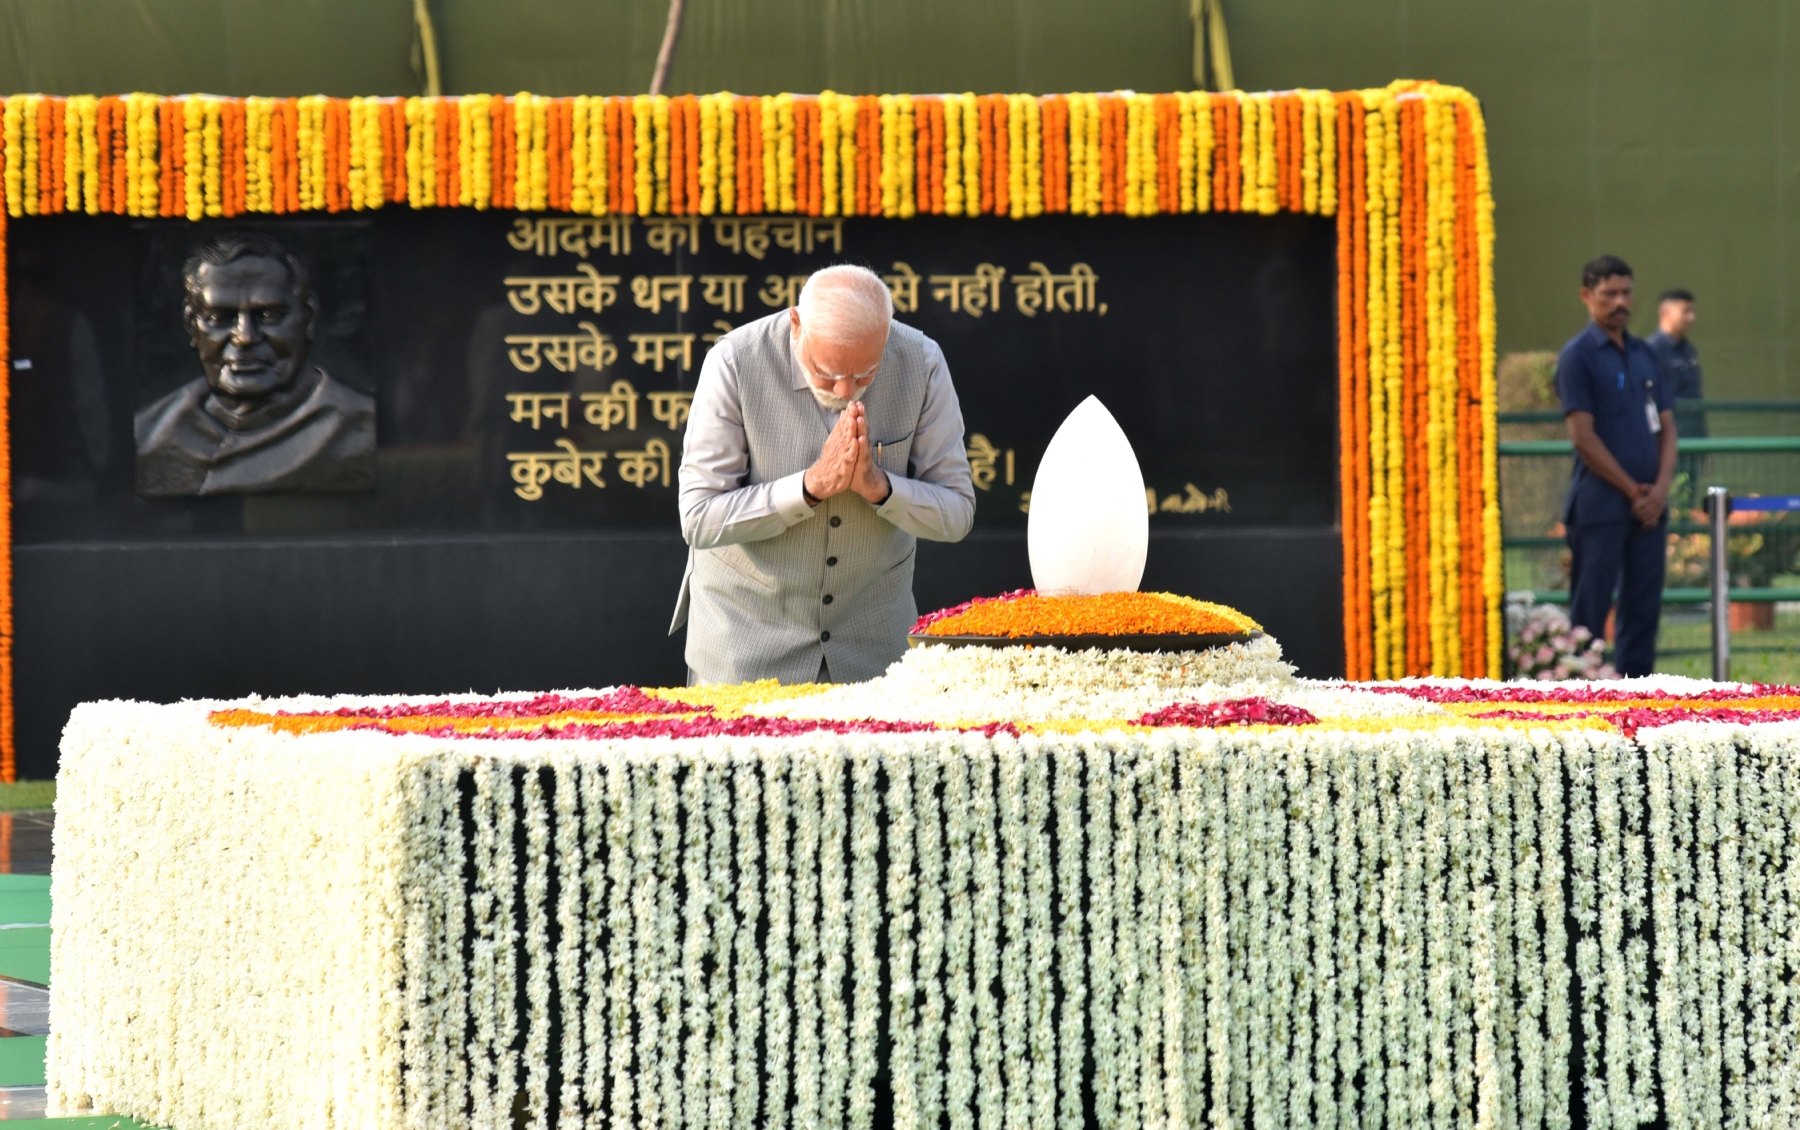 प्रधान मंत्री नरेन्द्र मोदी और अमित शाह, राजनाथ सिंह, ओम बिरला ने पूर्व प्रधानमंत्री अटल बिहारी वाजयेपी की पांचवीं पुण्यतिथि पर उनकी समाधि स्थल सदैव अटल पर श्रद्धांजलि अर्पित करते हुए। 